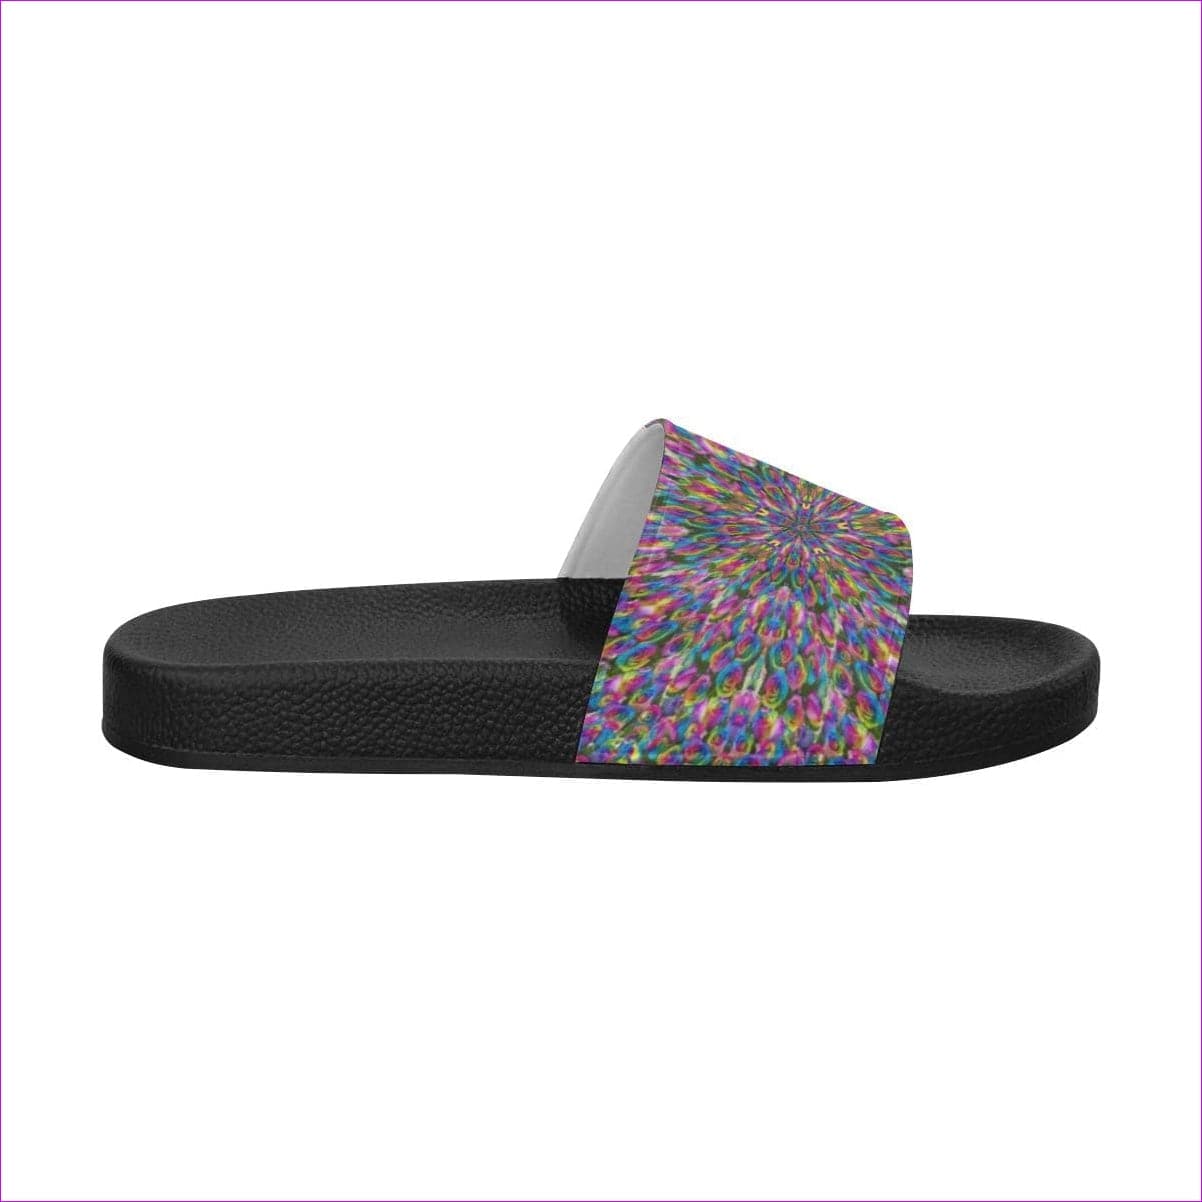 Psygyro Slide Womens Slide Sandals(Model 057) - women's shoe at TFC&H Co.